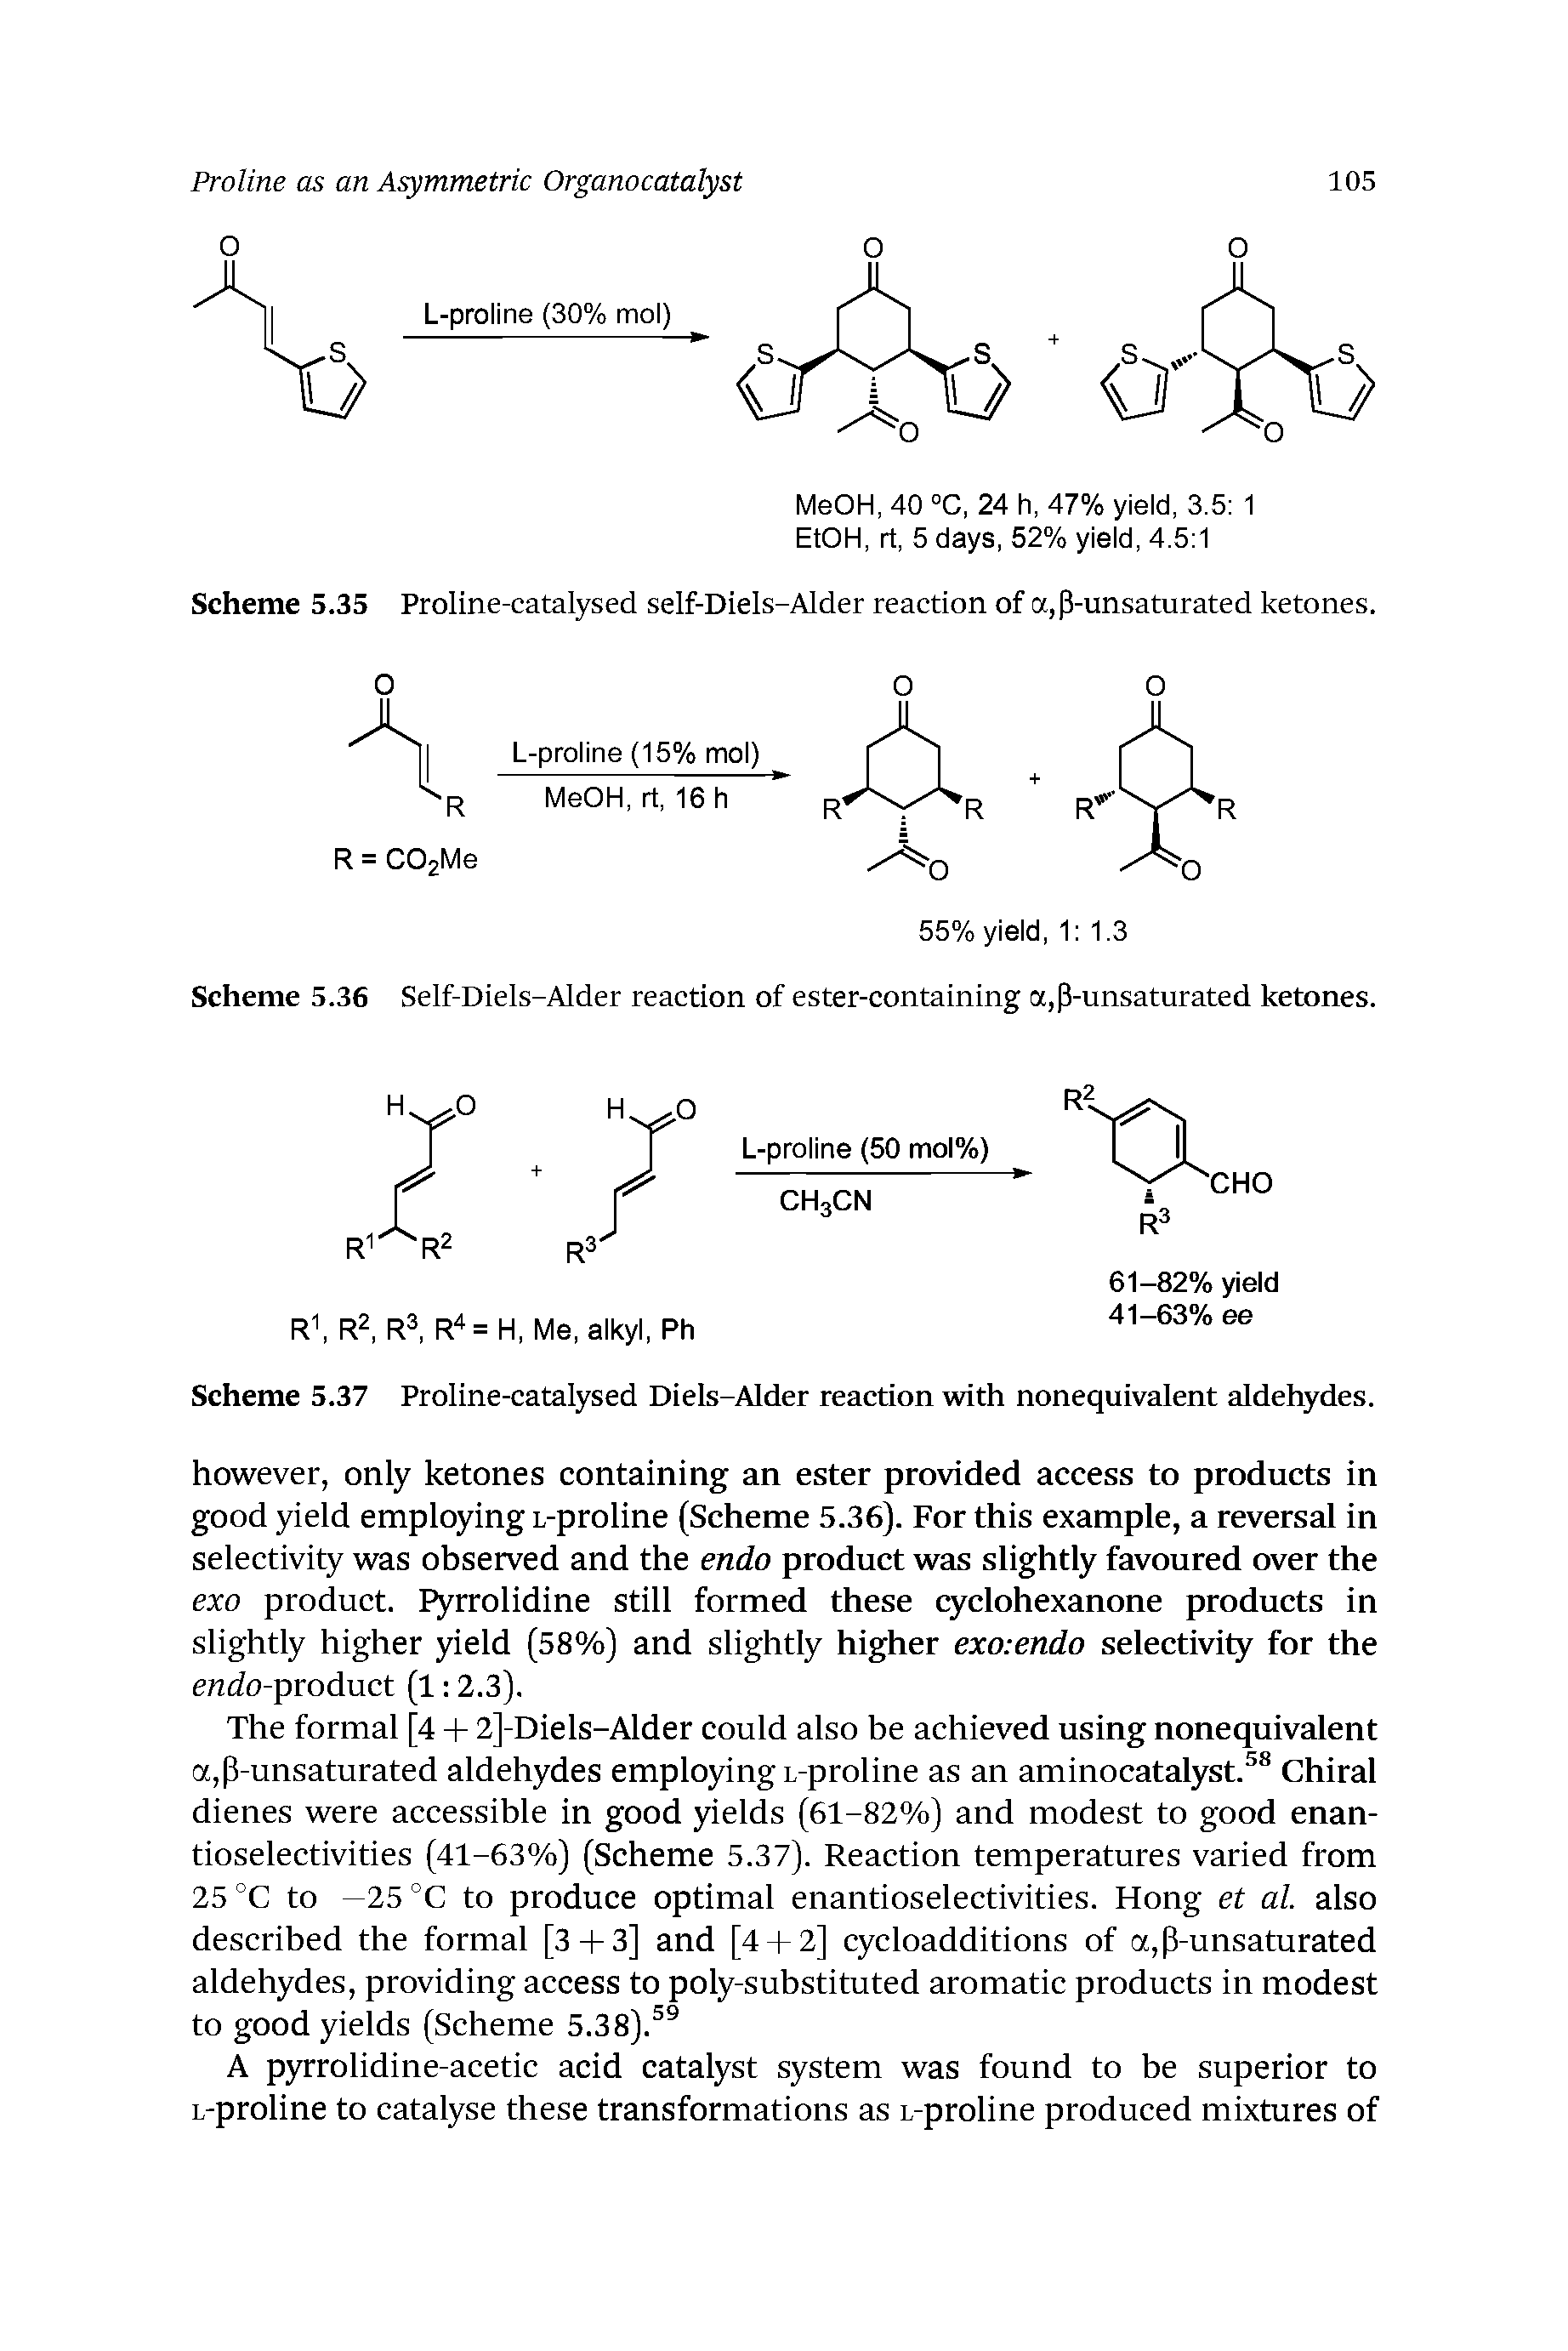 Scheme 5.36 Self-Diels-Alder reaction of ester-containing a,p-unsaturated ketones.